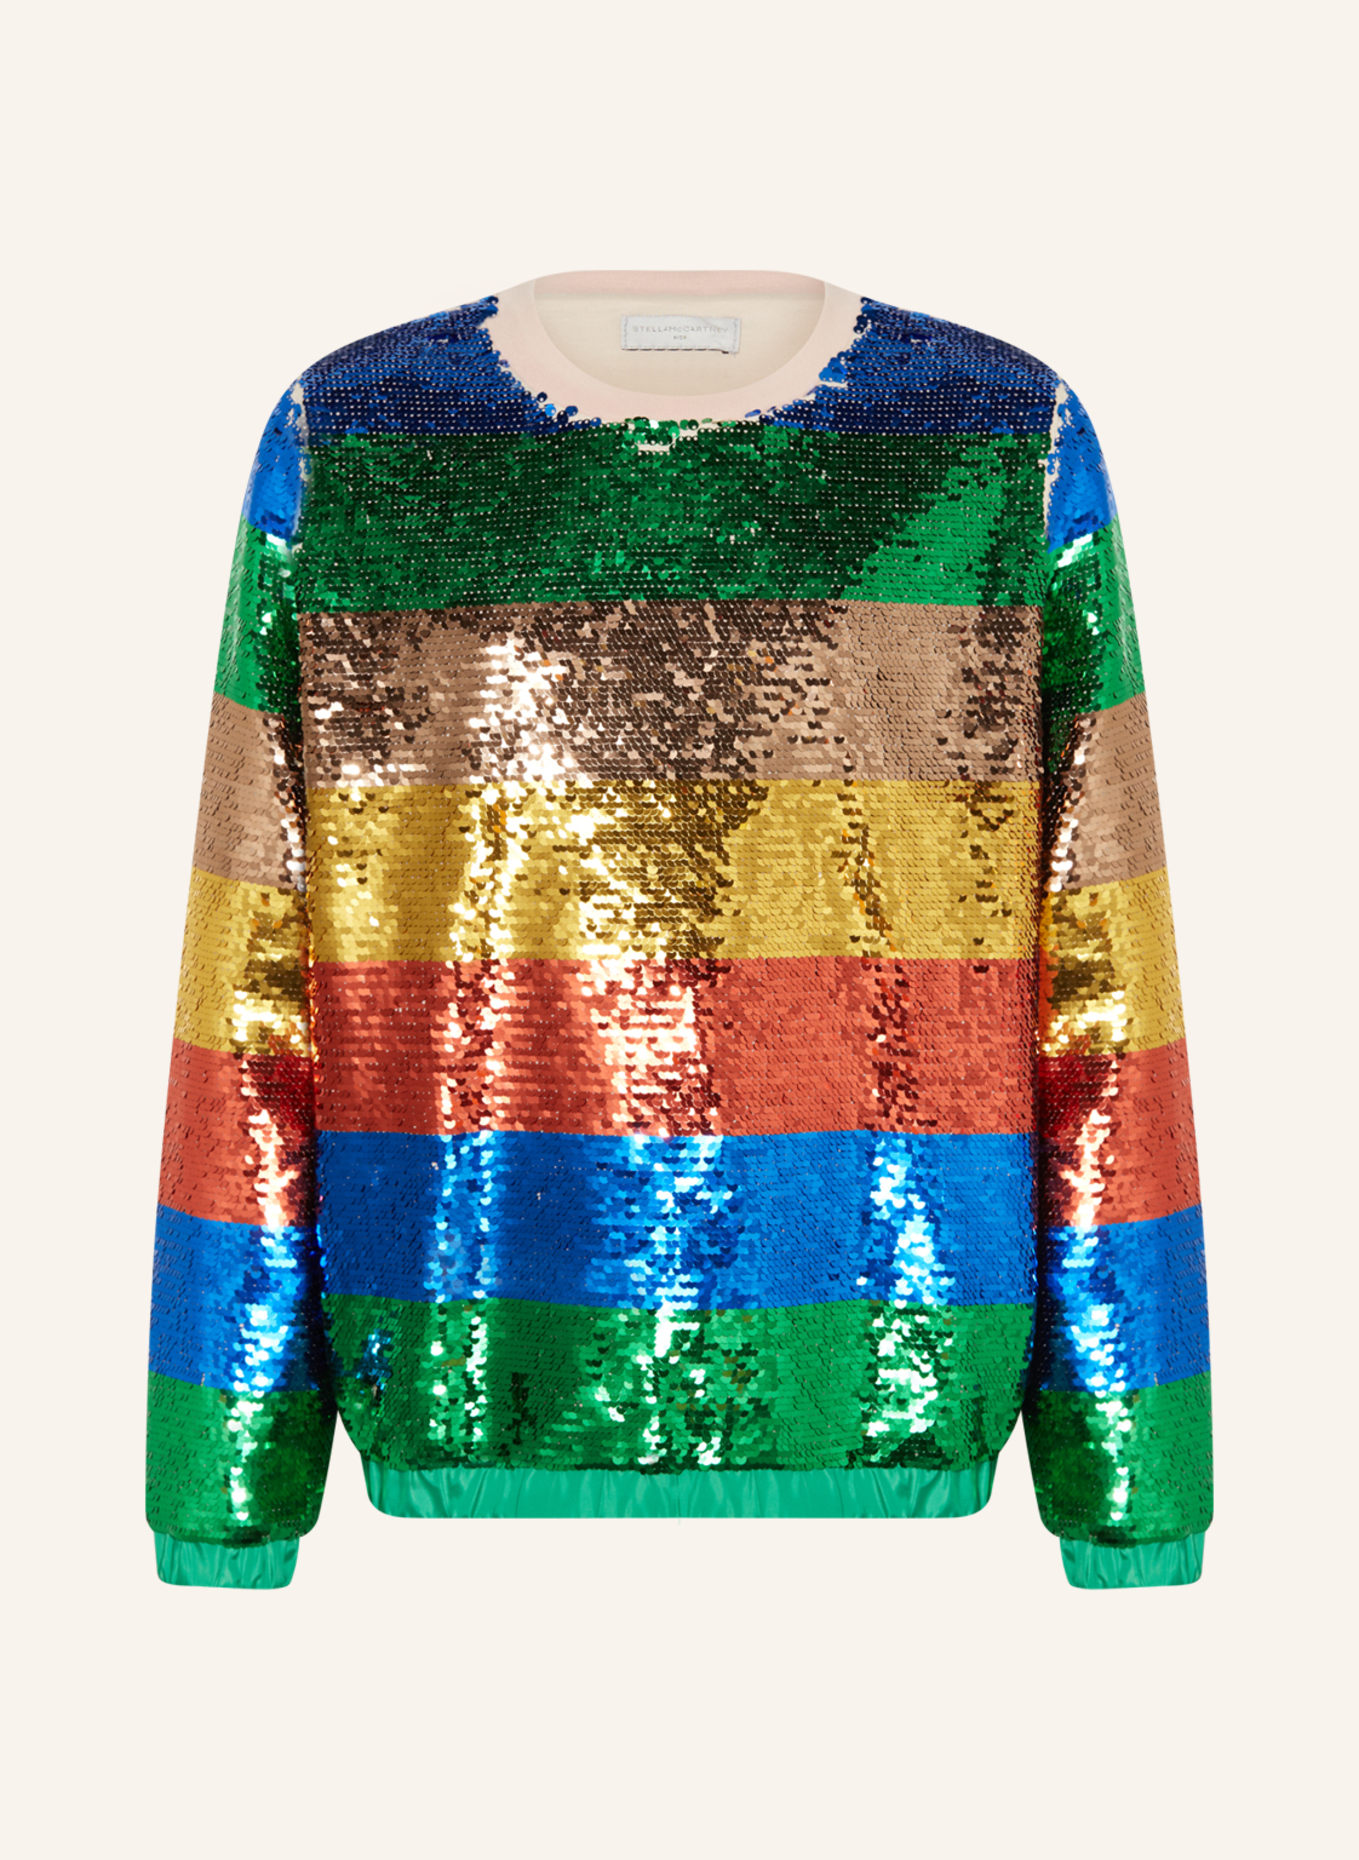 STELLA McCARTNEY KIDS Sweatshirt mit Pailletten, Farbe: BLAU/ GRÜN/ GOLD (Bild 1)